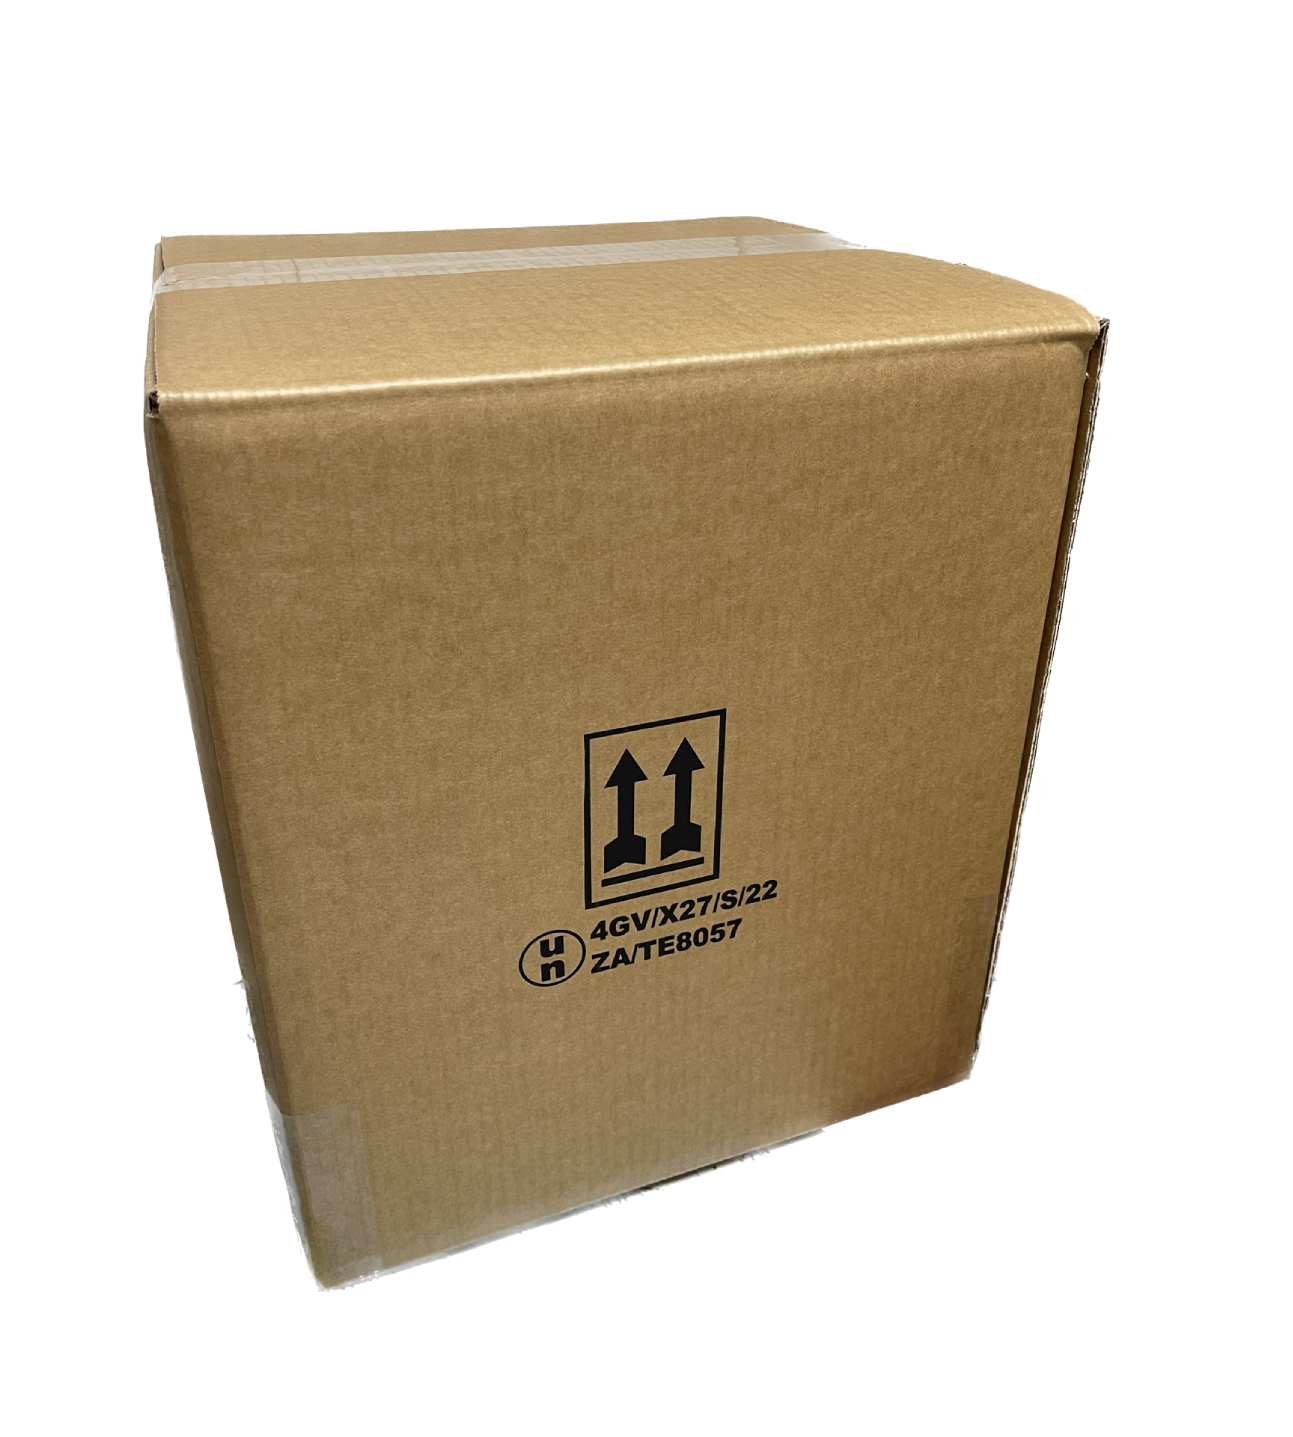 UN Certified Box – 4GV/X25 Box